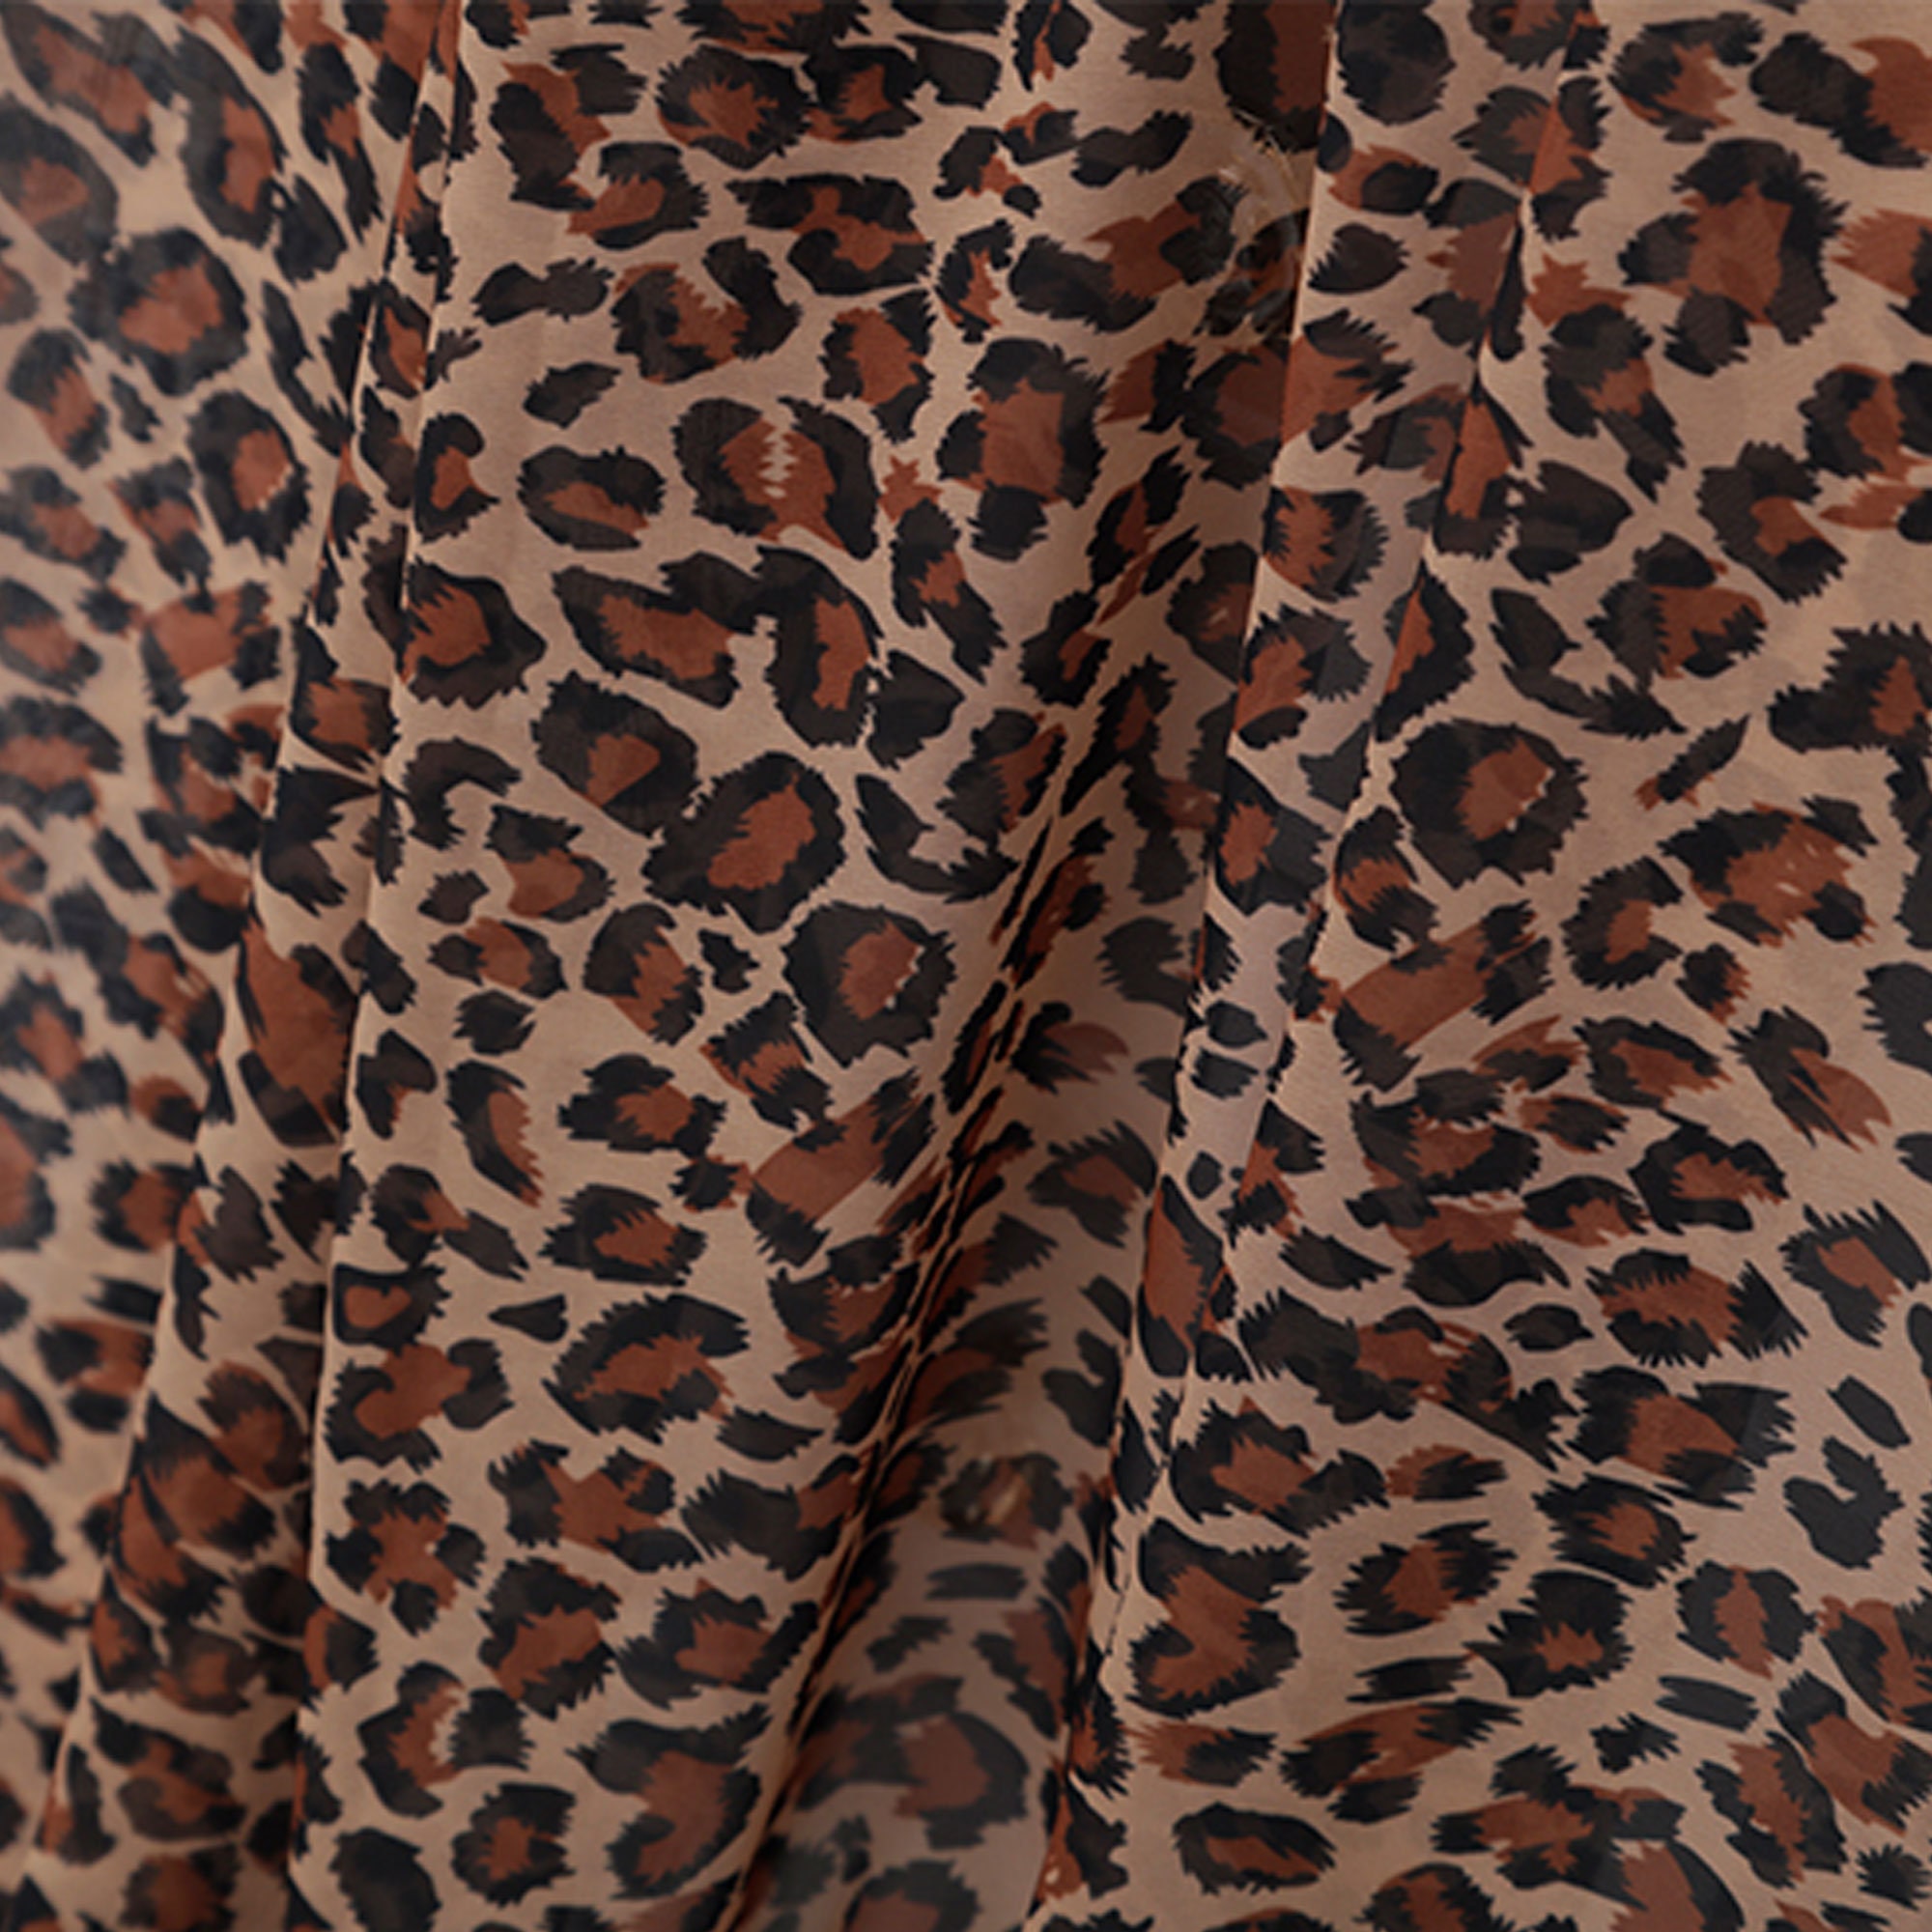 Leopard Print Chiffon Fabric Sheer Chiffon Overlay for Kimono - Etsy